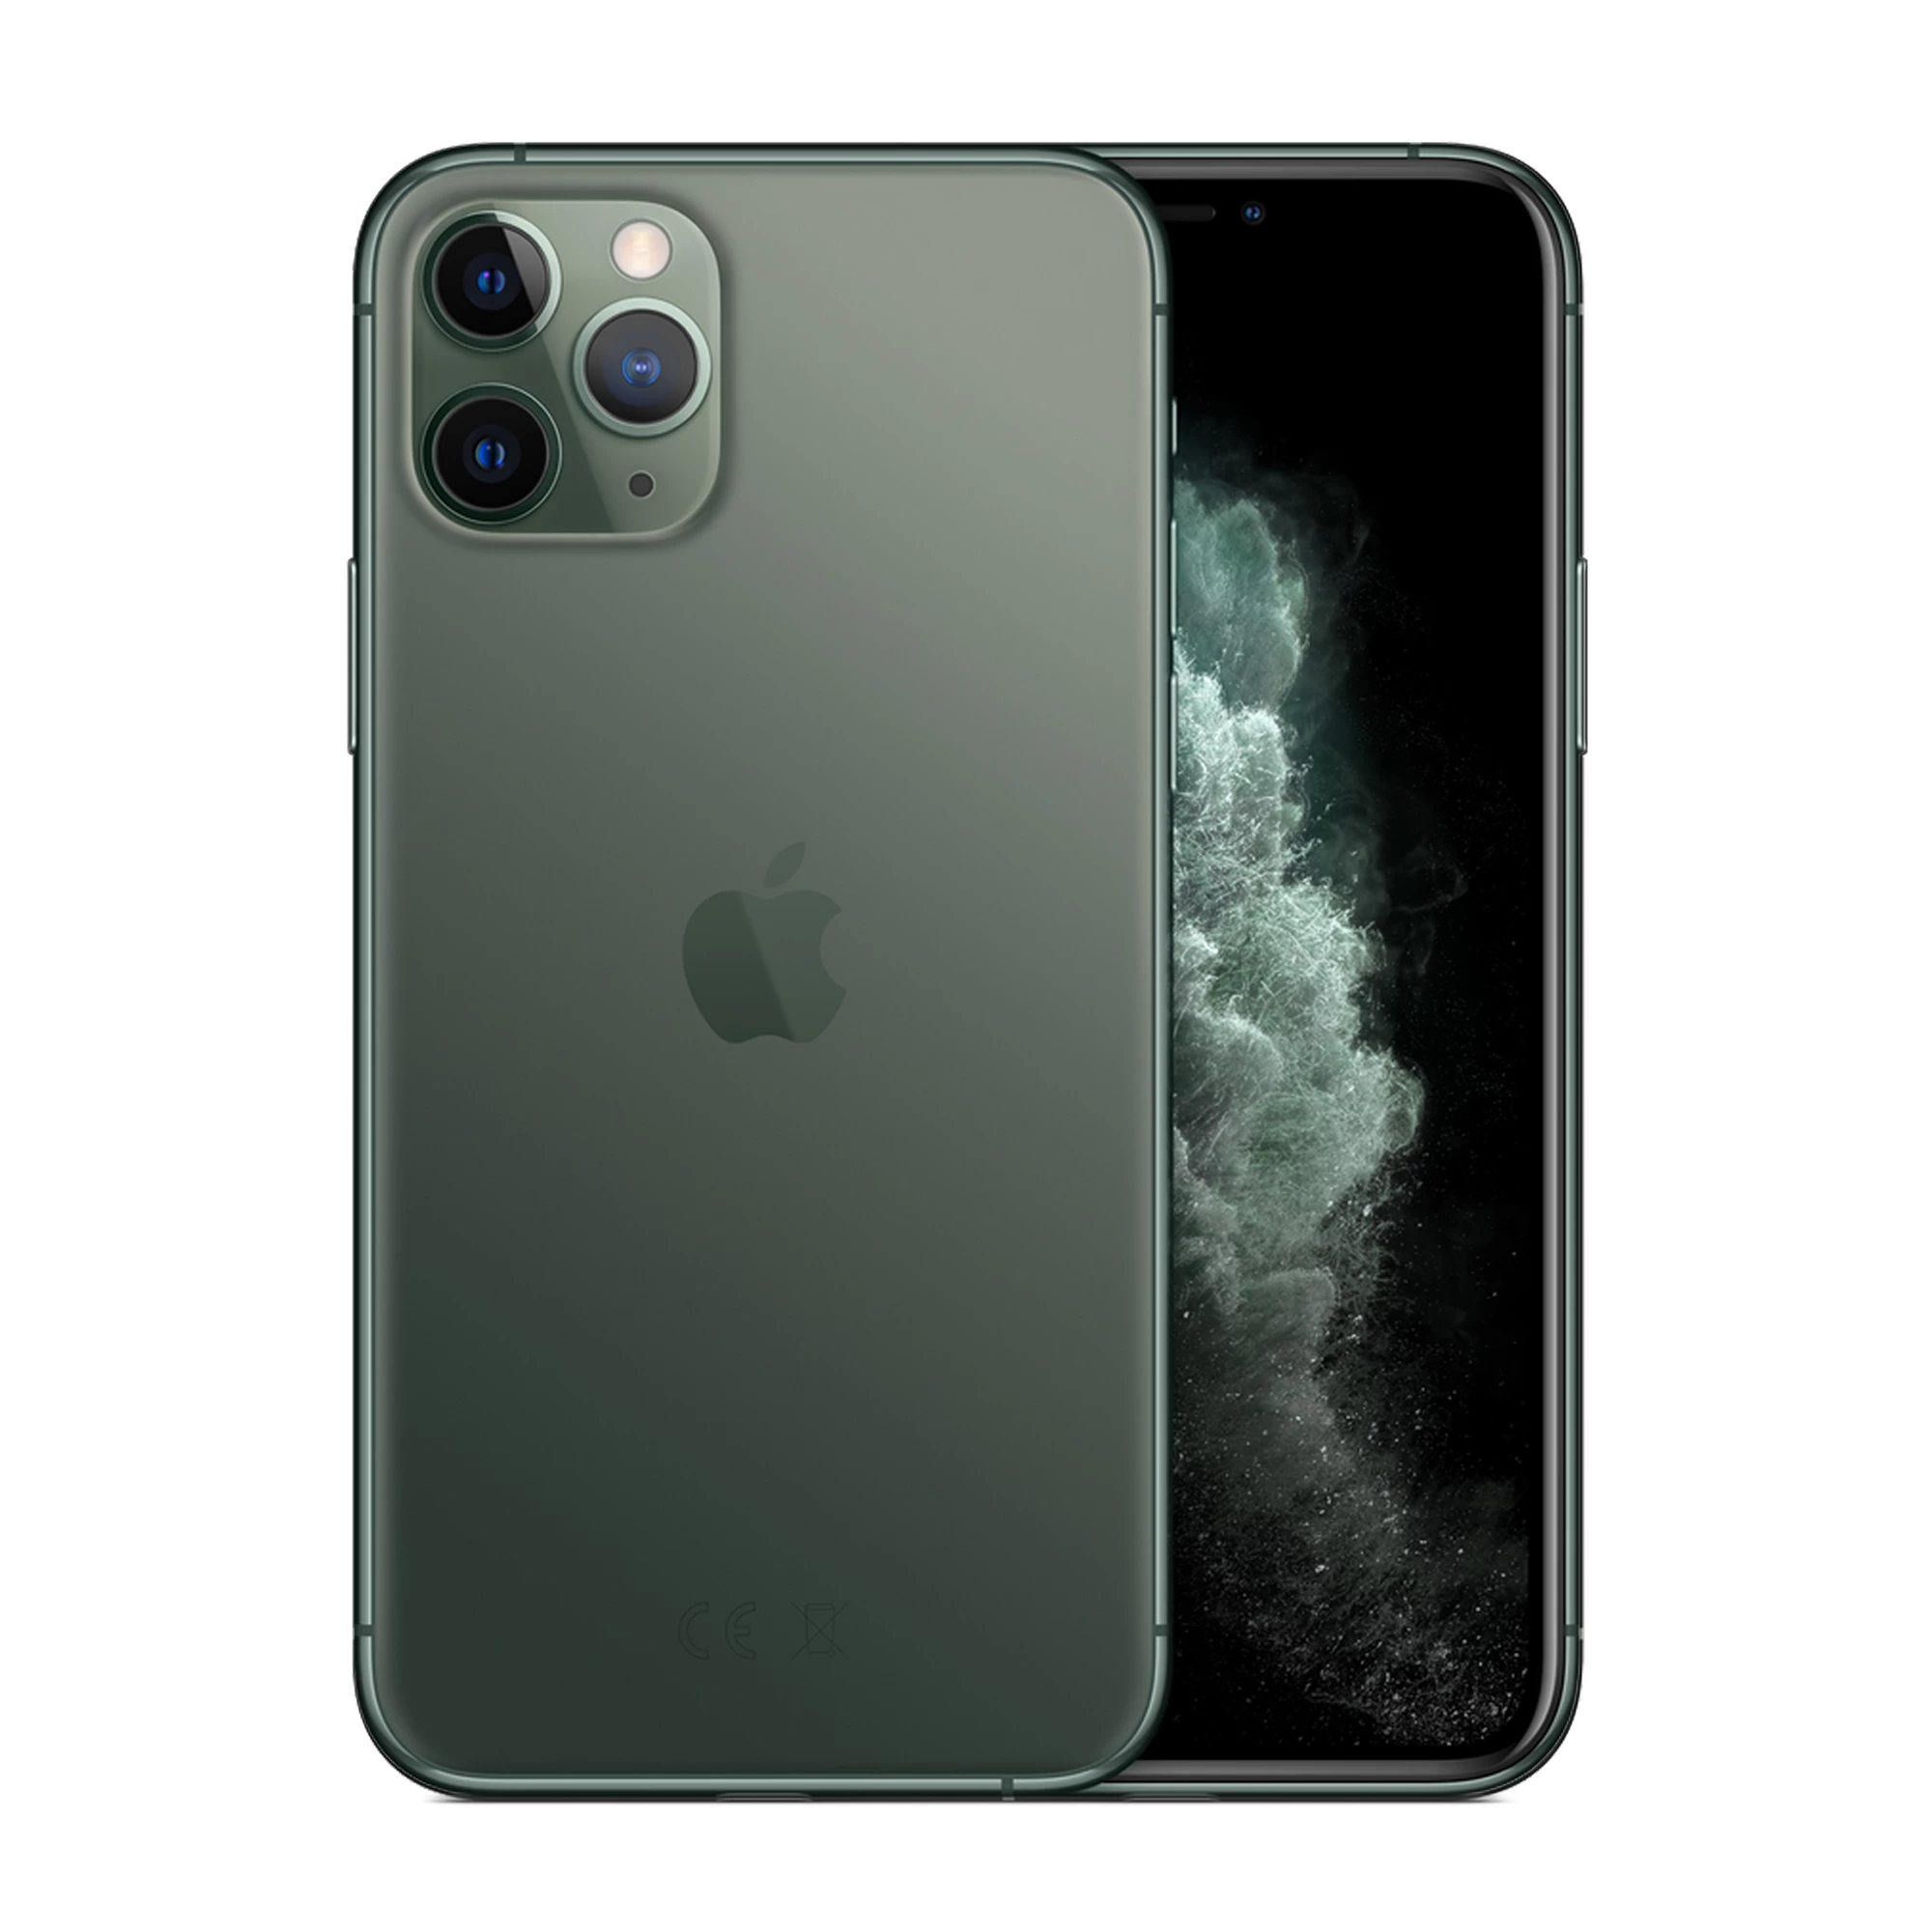 Apple iPhone 11 Pro Max Dual Sim 256GB Midnight Green (MWF42)